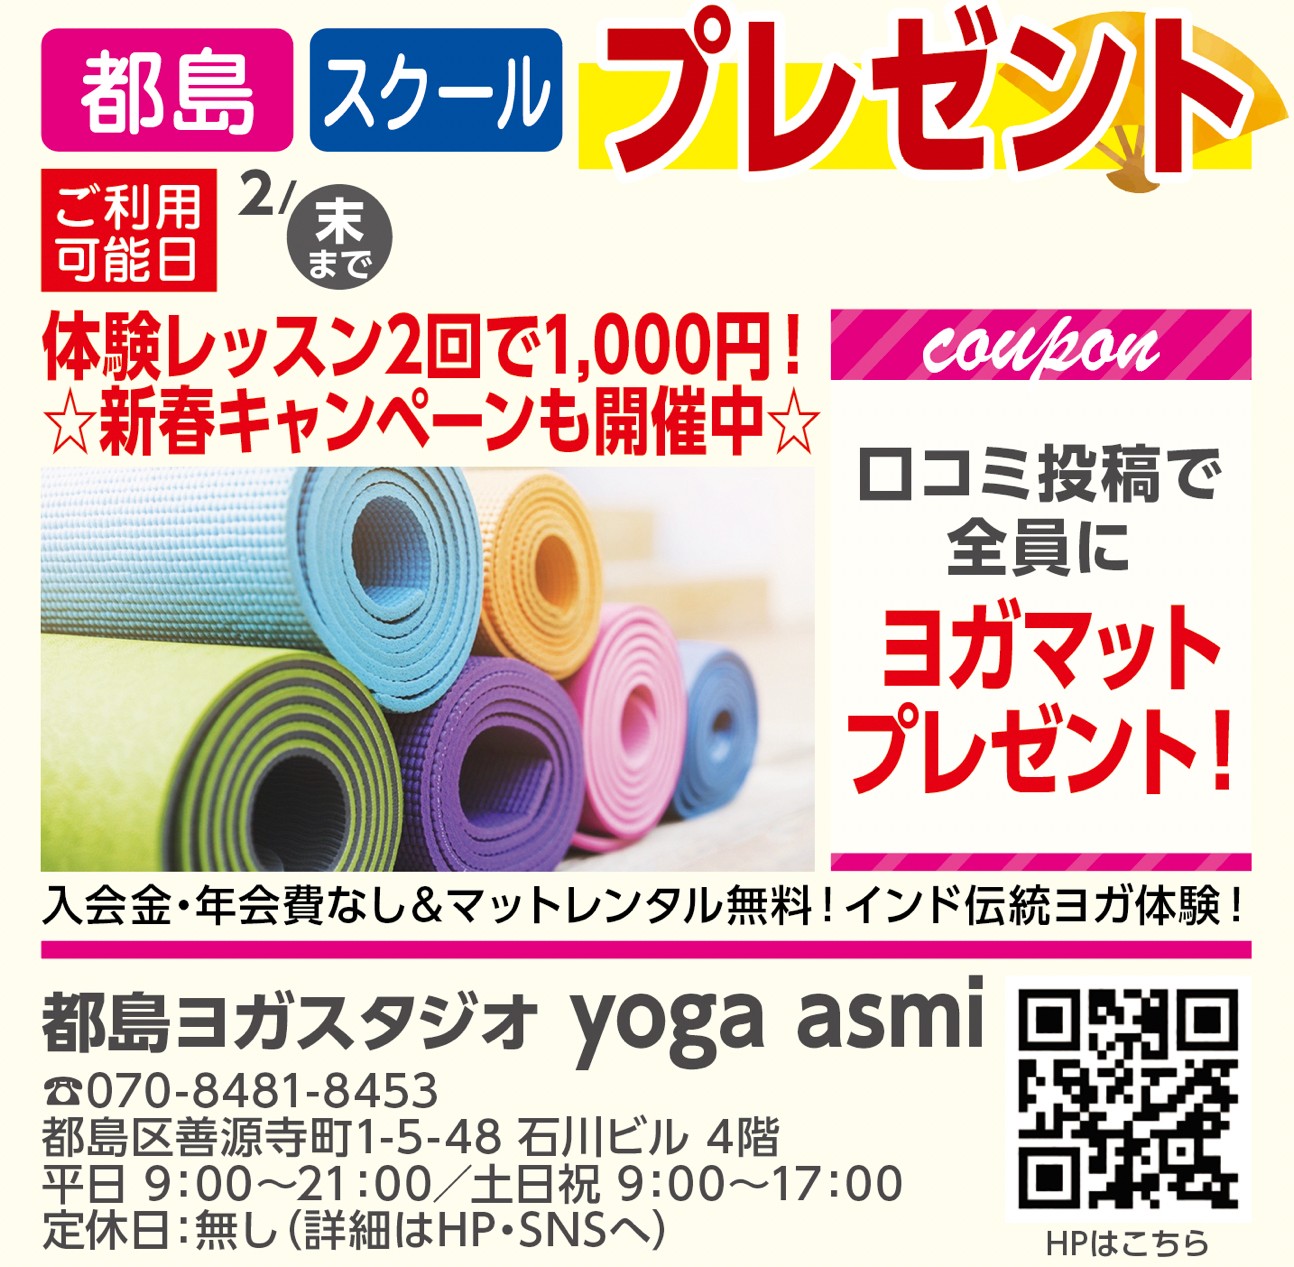 都島ヨガスタジオ yoga asmi